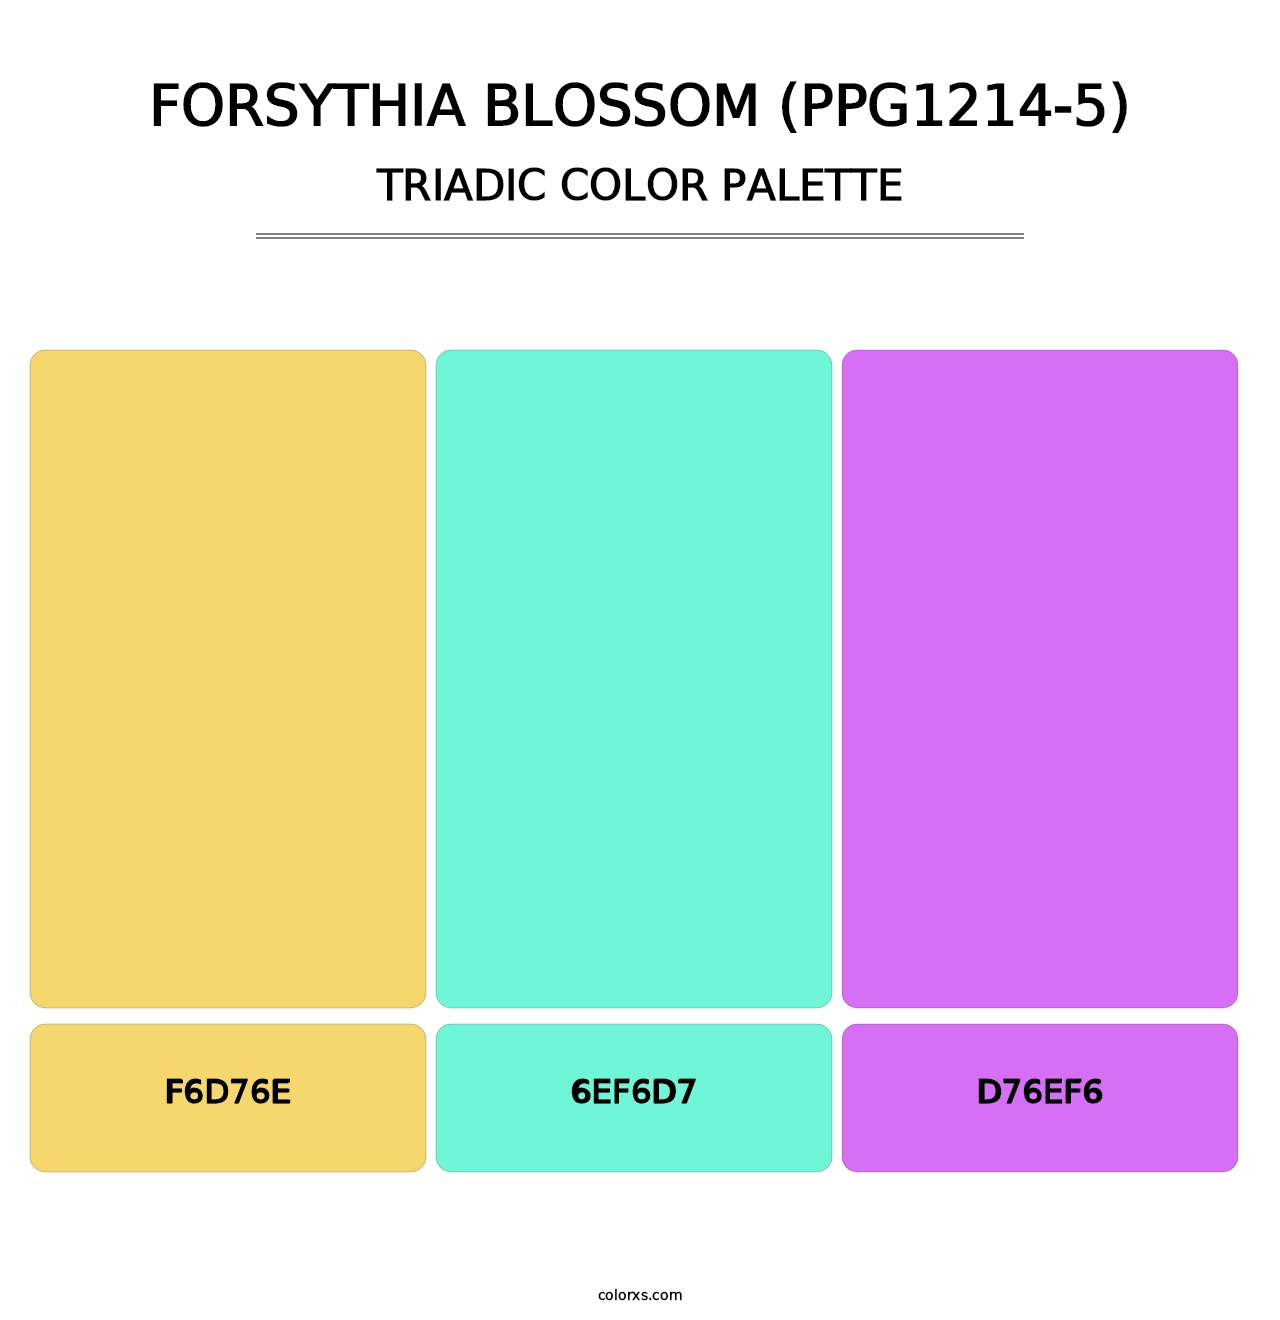 Forsythia Blossom (PPG1214-5) - Triadic Color Palette